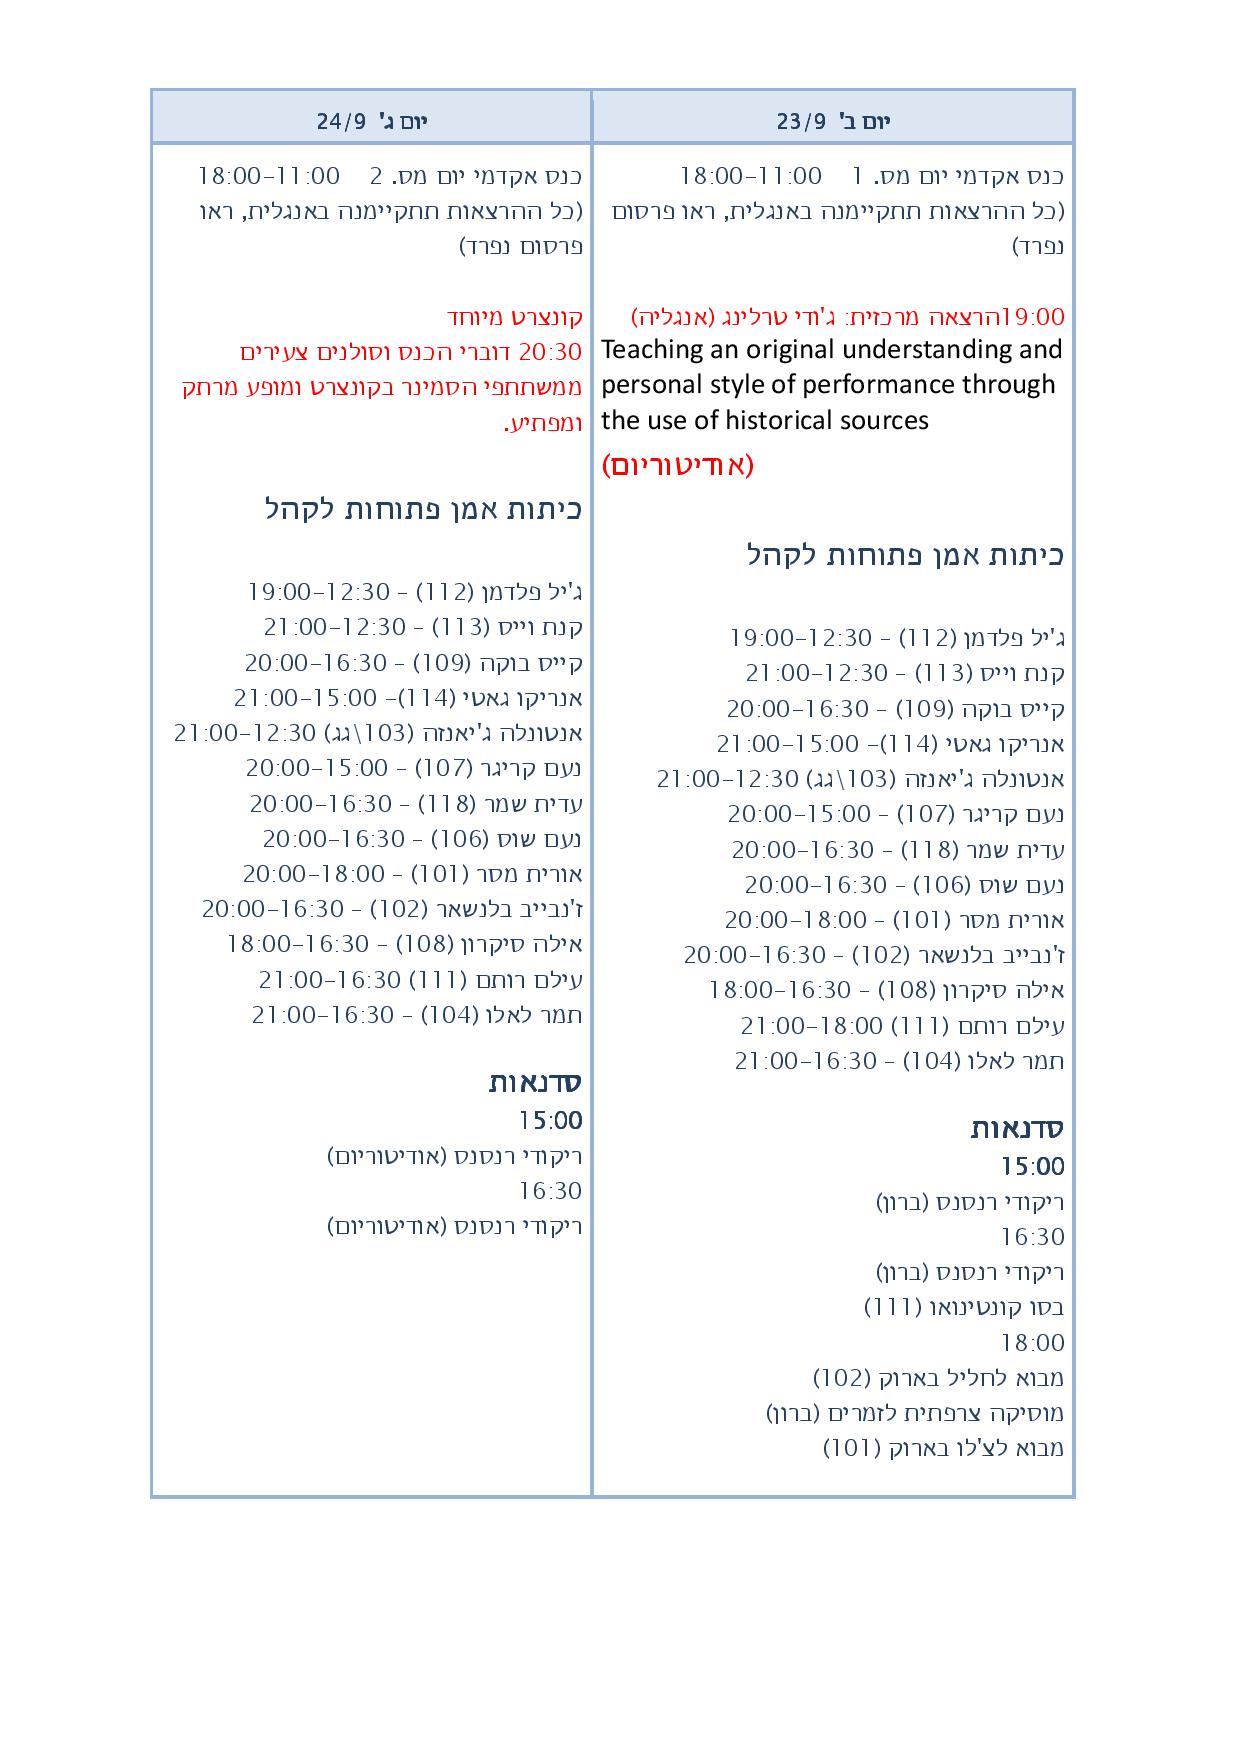 פי די אף טבלה לפרסום - עברית-page-002